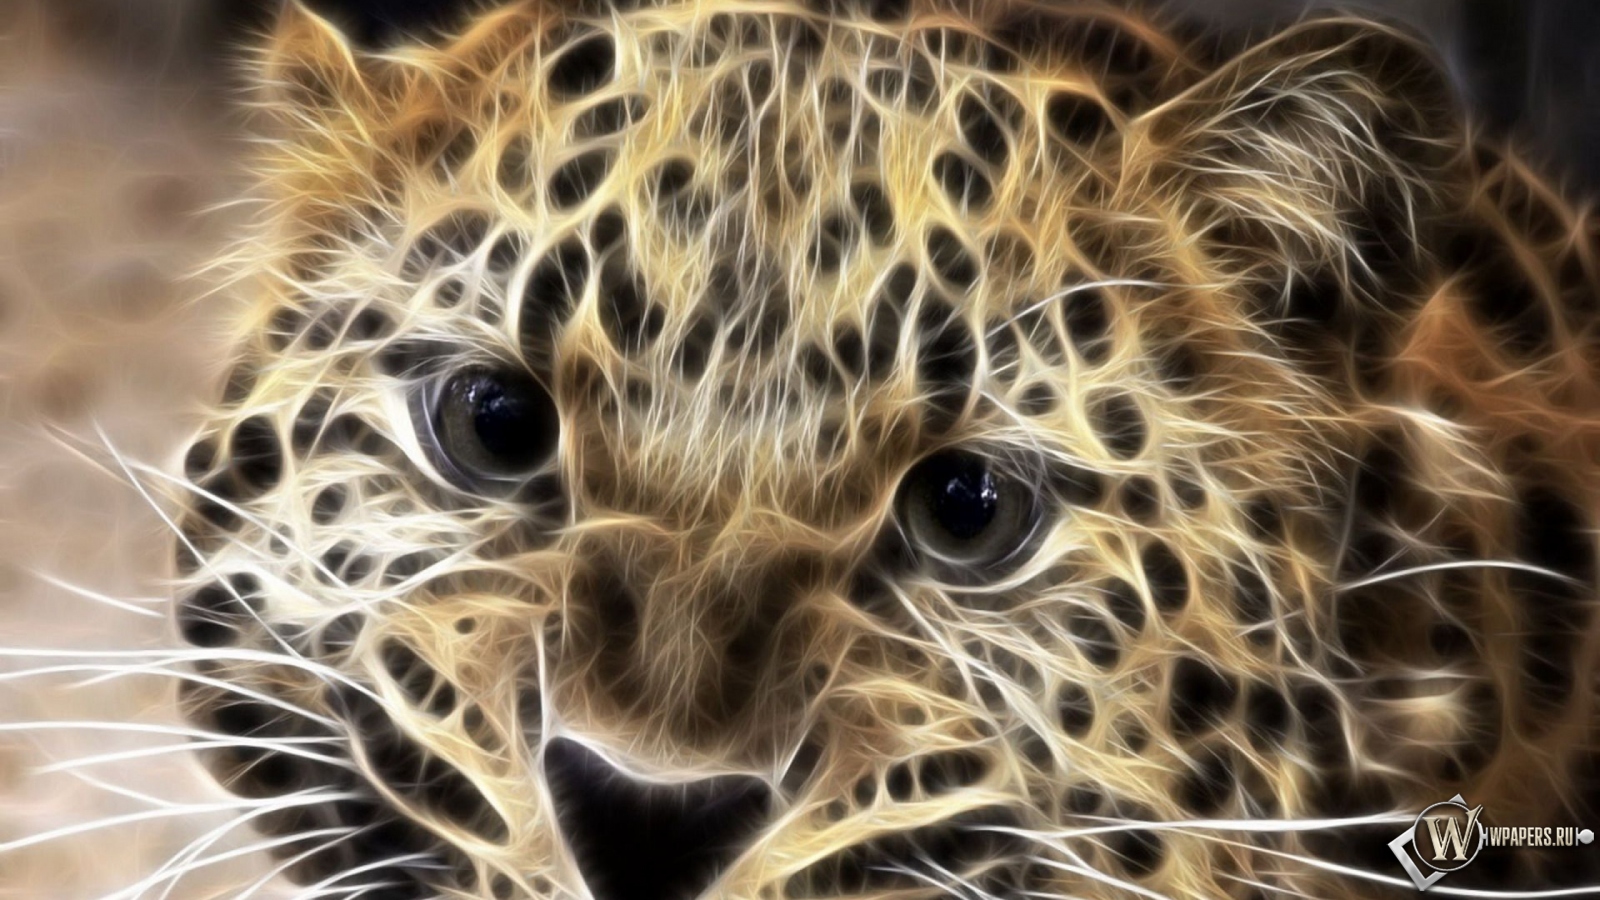 Леопард в обработке 1600x900